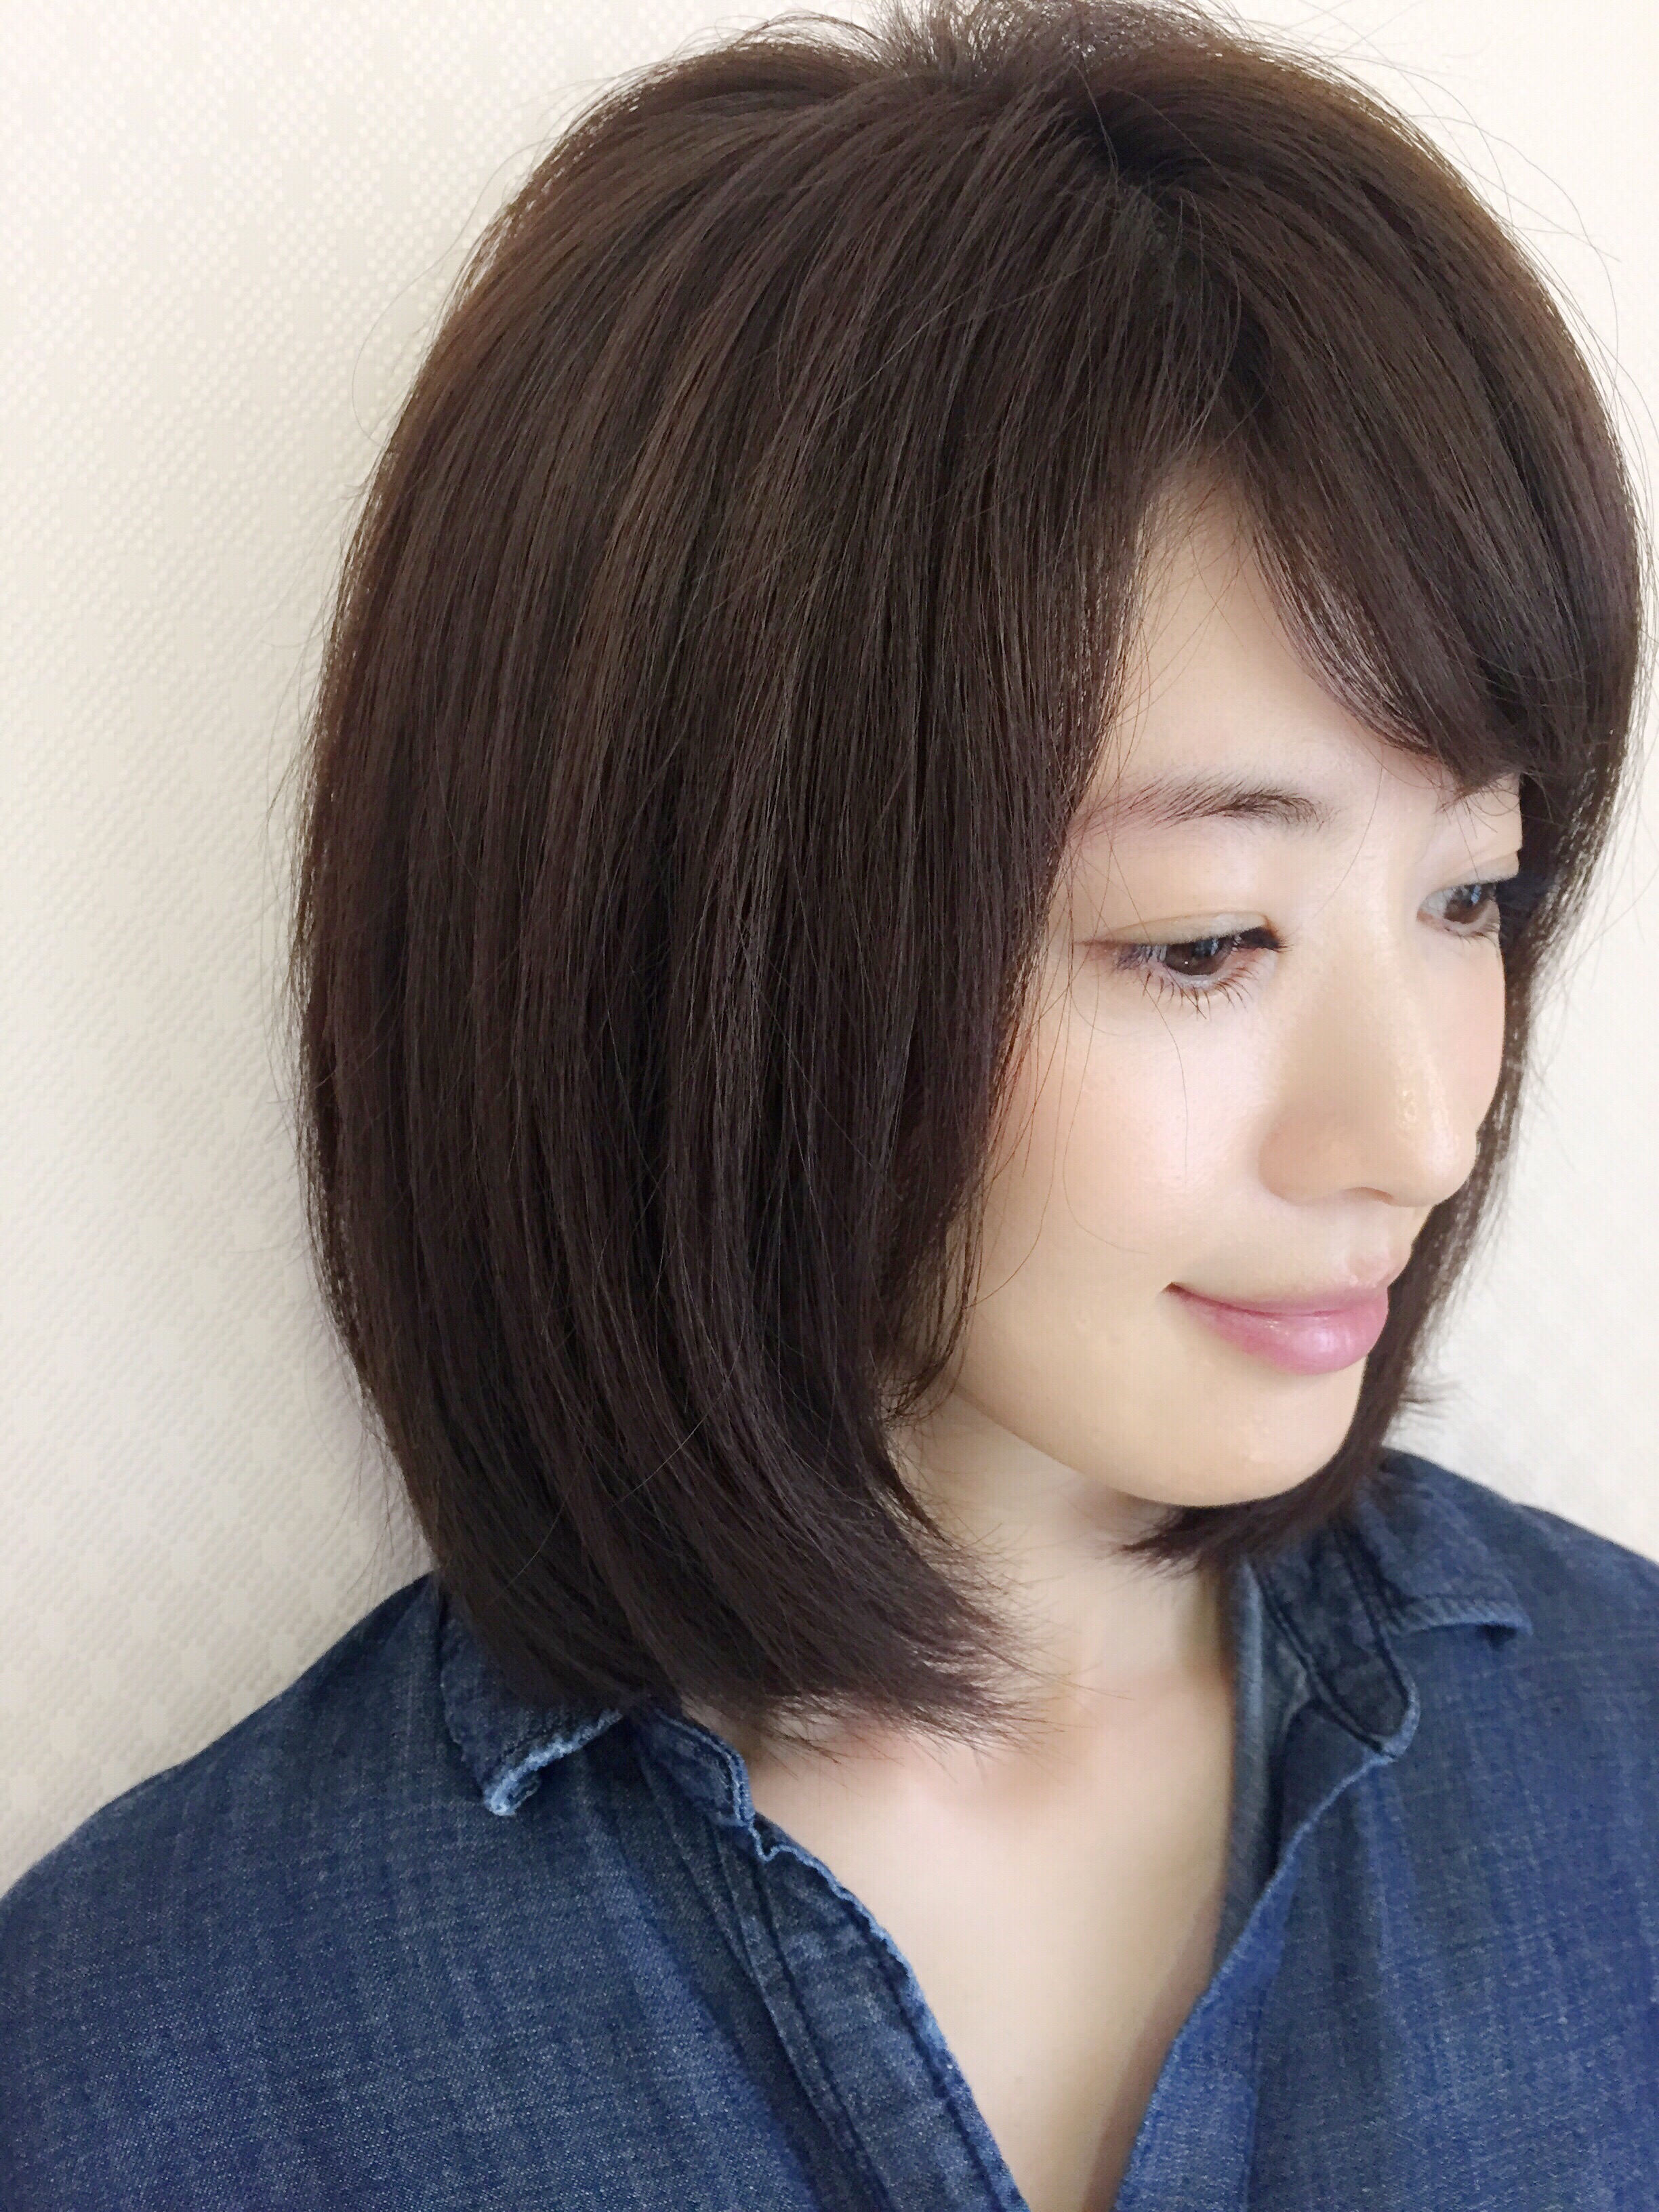 リスクが少なく 髪をキレイに見せやすい色 パールグレー 高垣麗子さんの髪 Naoto Kimura